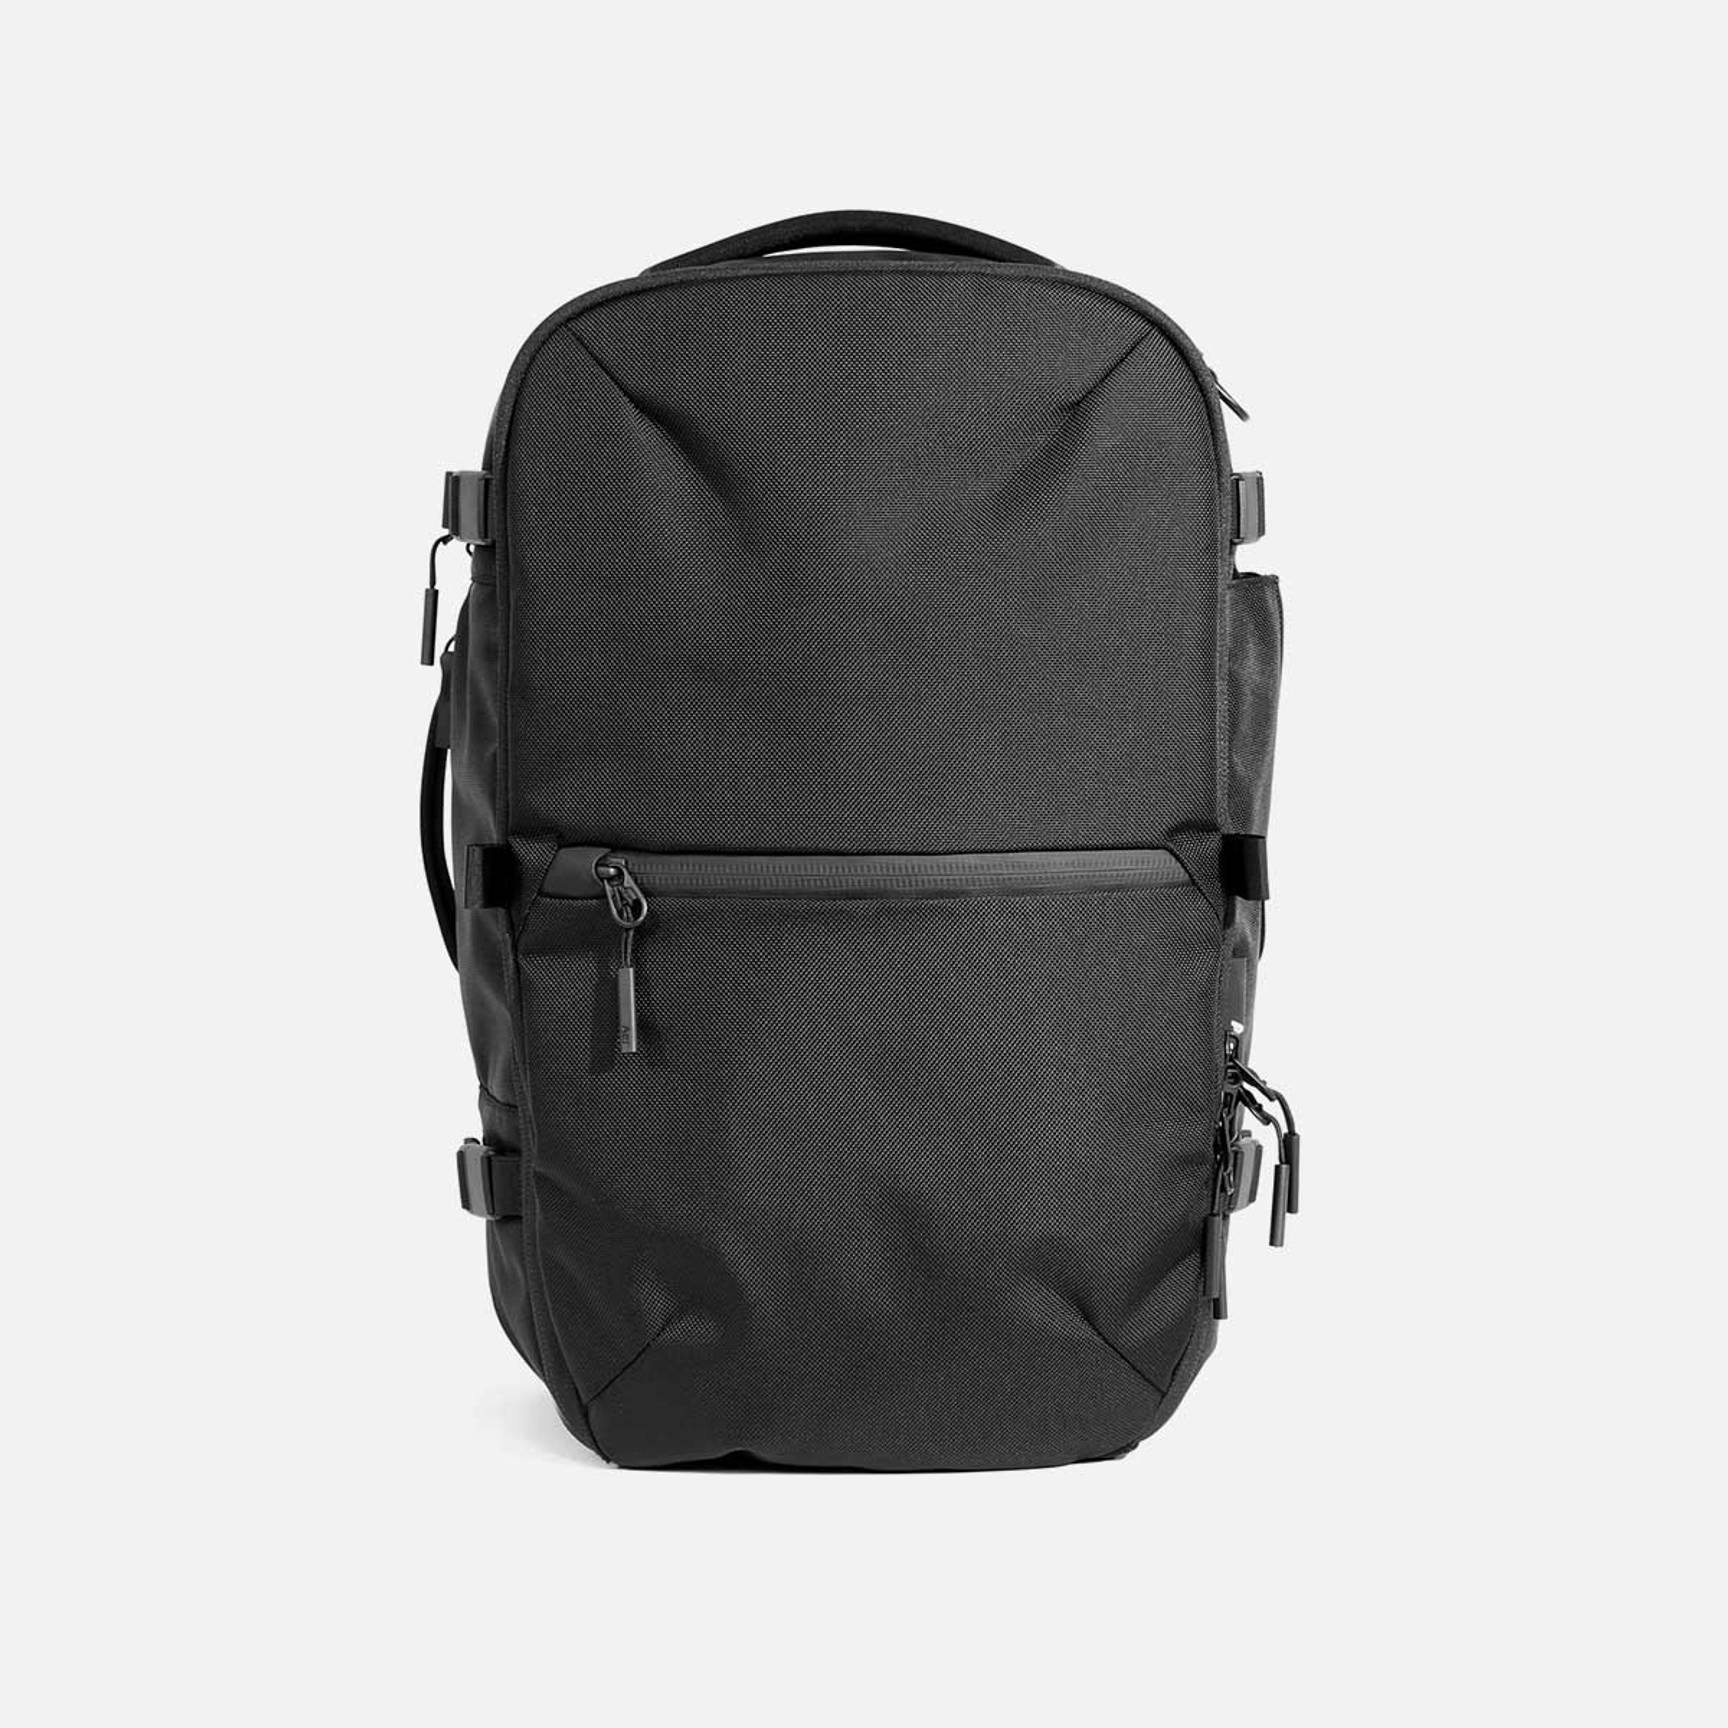 Black Cooler Bag Pro X 15